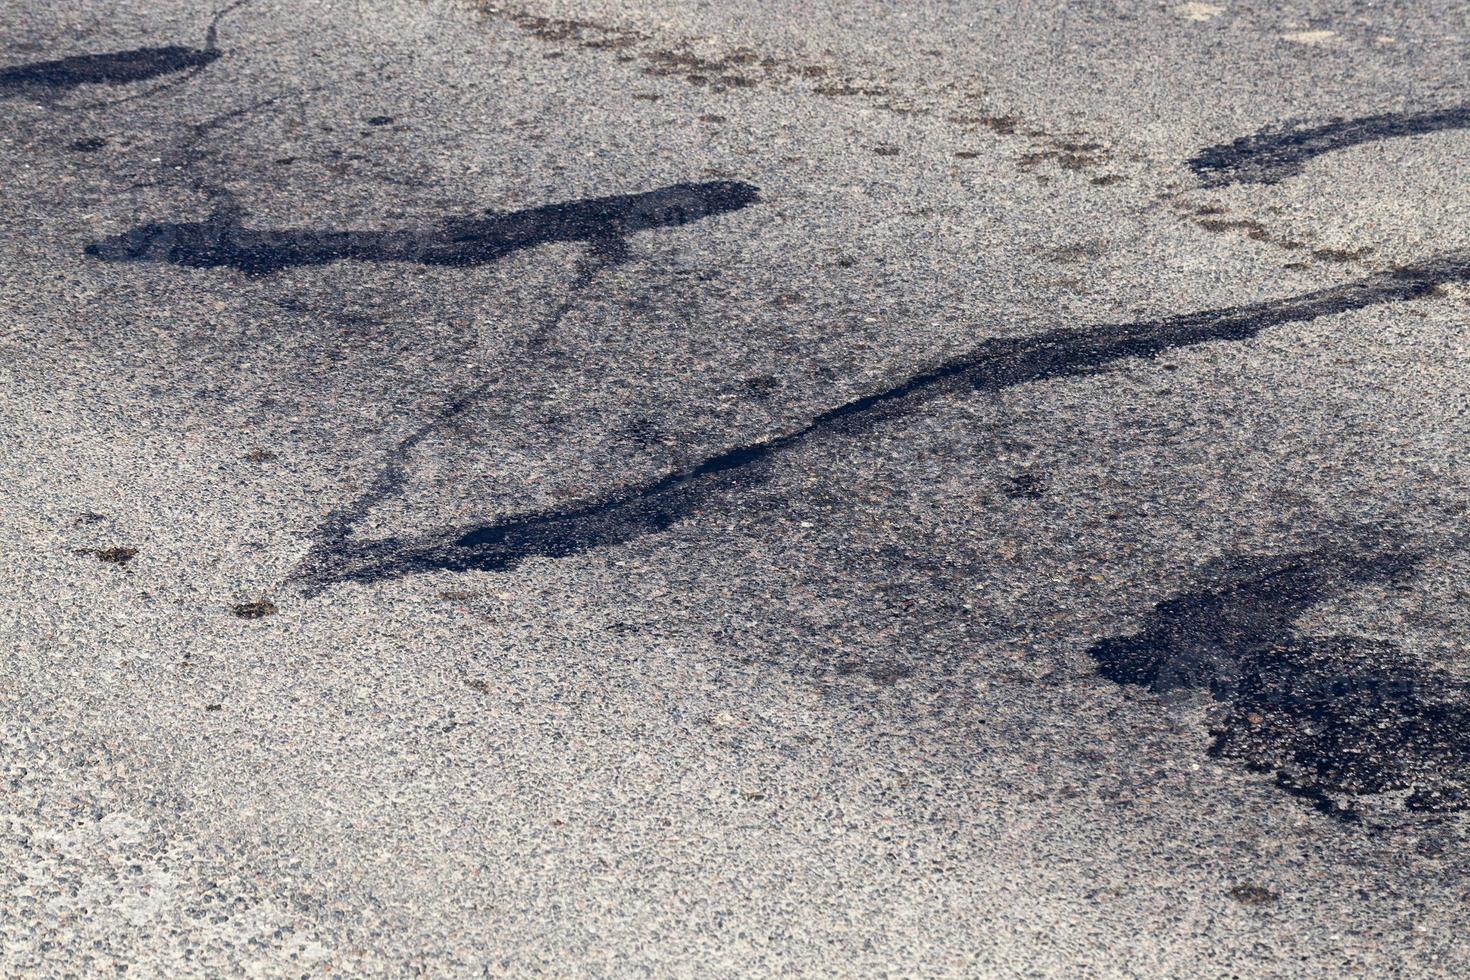 parte de uma estrada de asfalto com danos foto